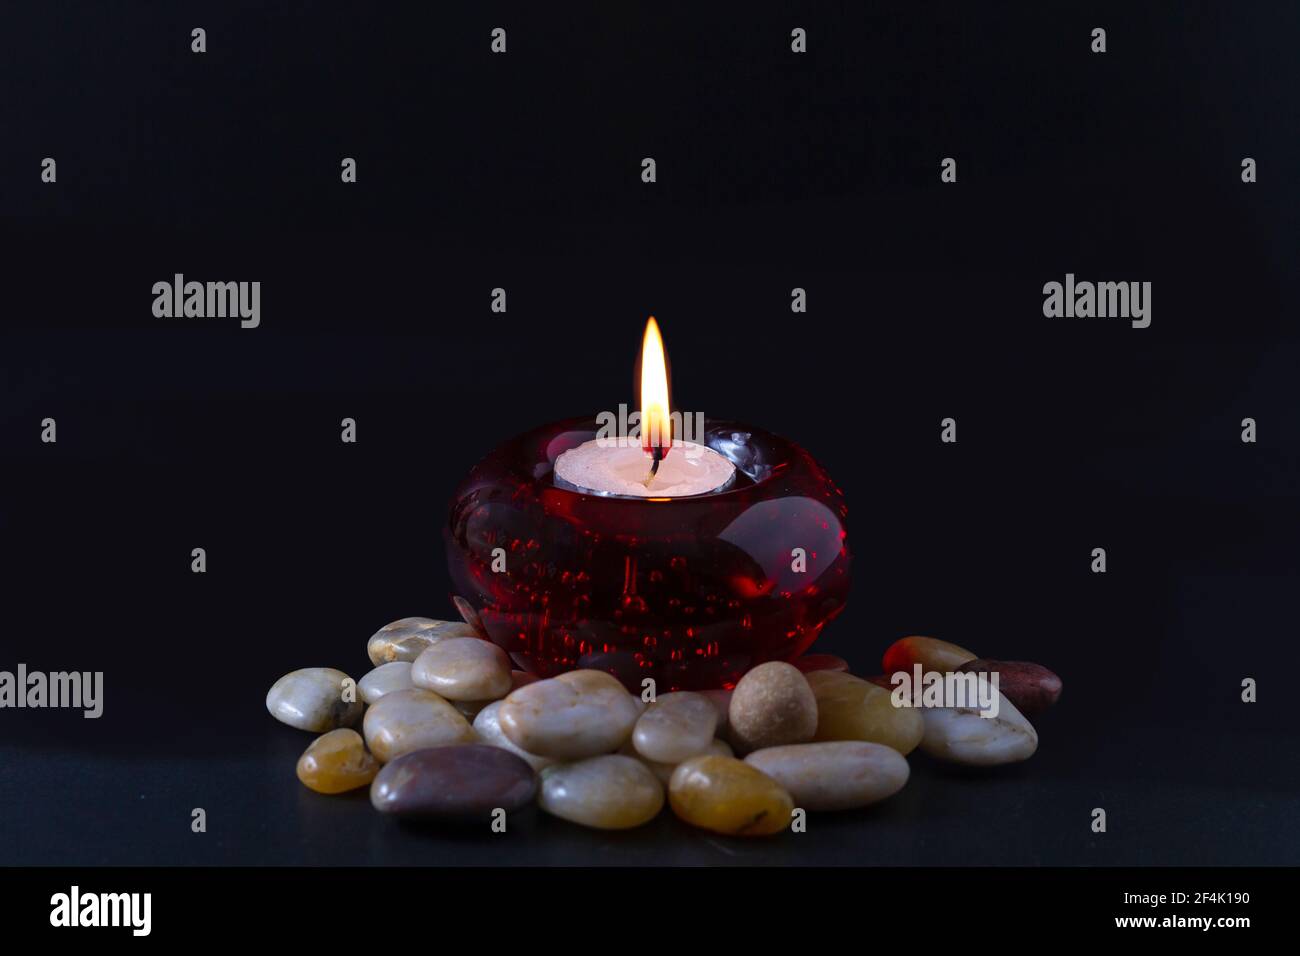 Concept de deuil ou de prière. Bougie brûlante dans un chandelier rond rouge avec des pierres de couleur qui l'entourent. Tout cela sur fond noir. Banque D'Images